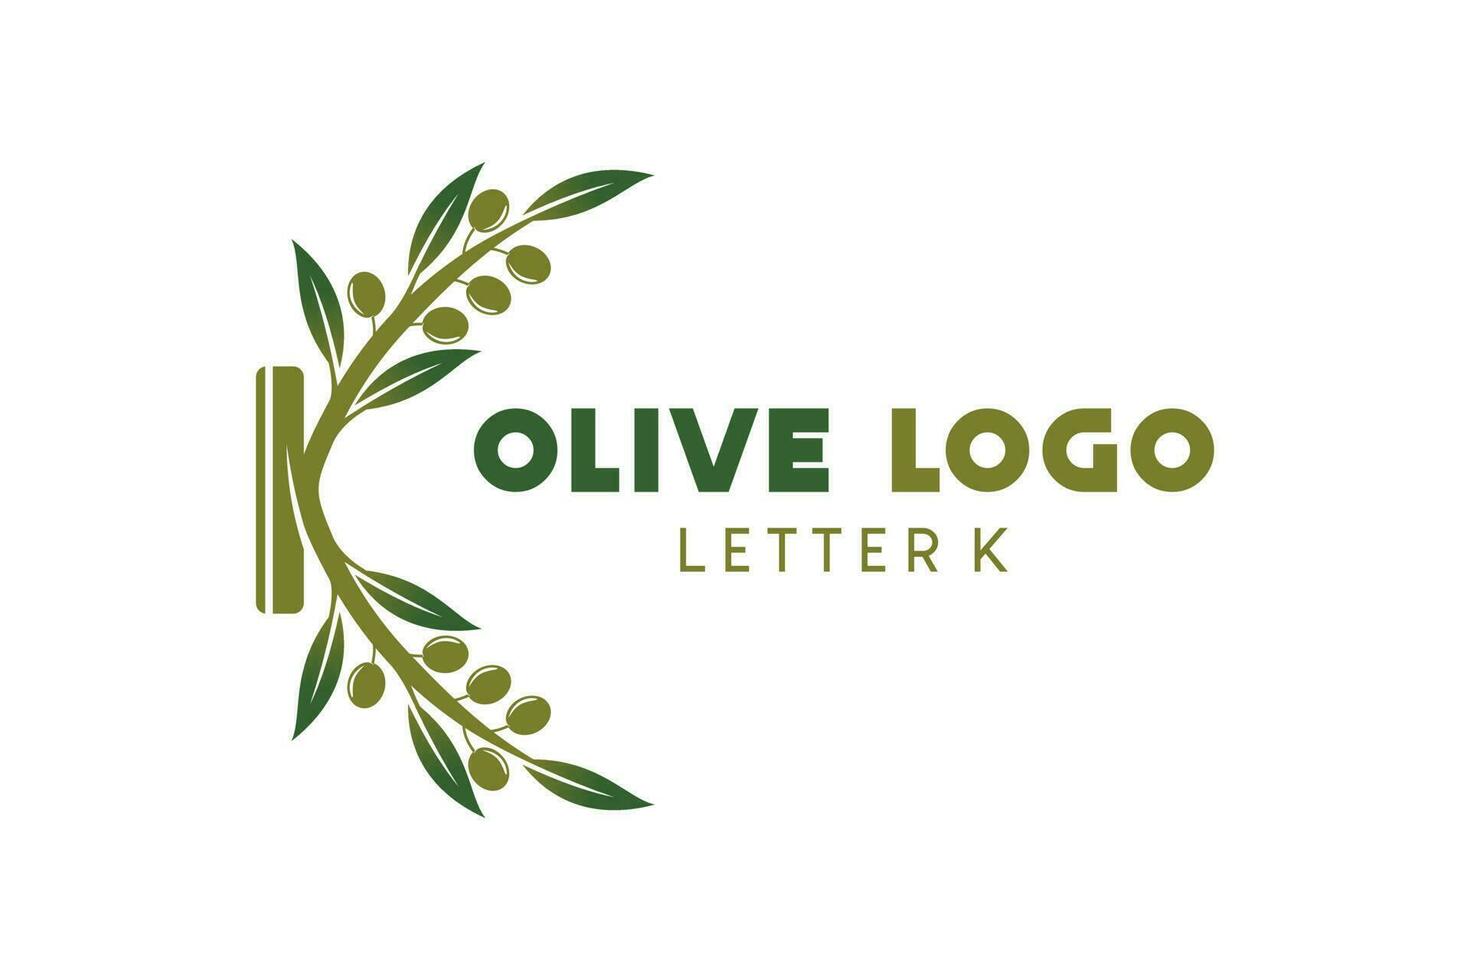 Olive logo design with letter k concept, natural green olive vector illustration